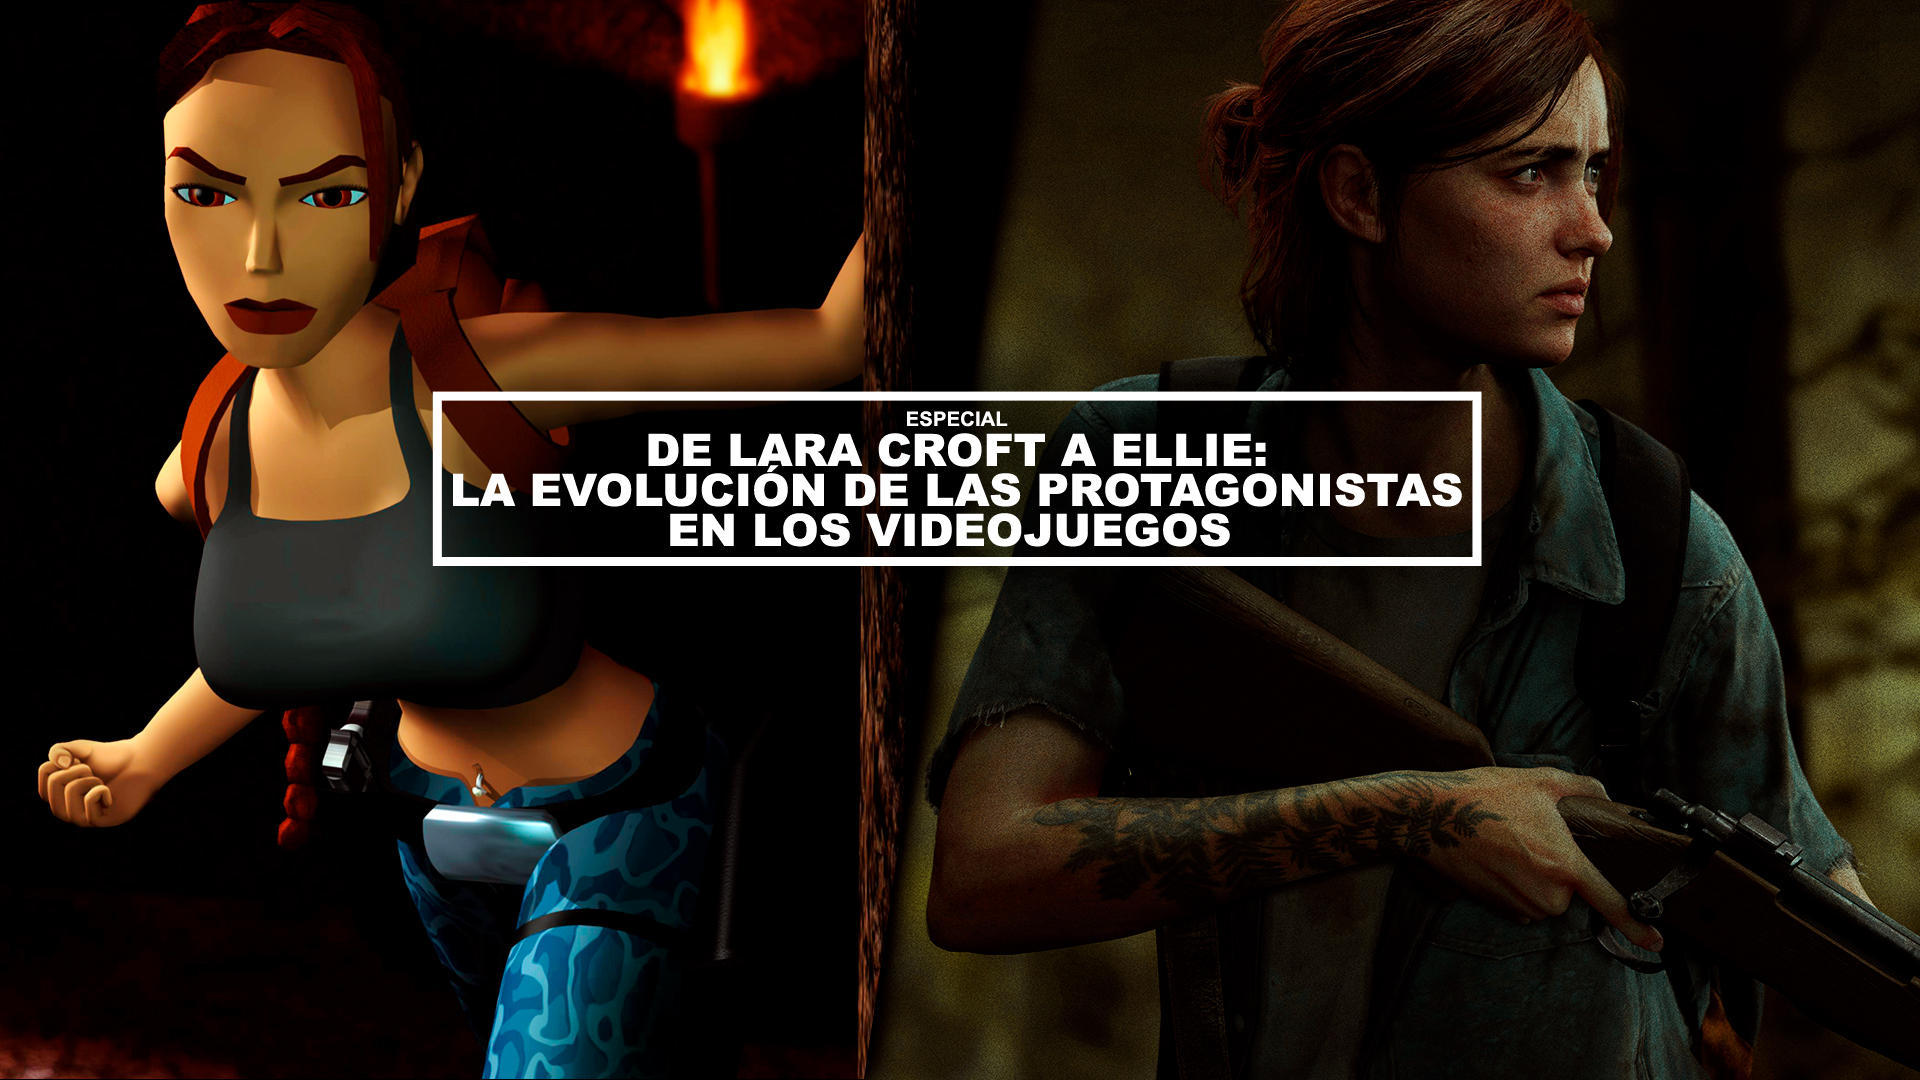 De Lara Croft a Ellie: La evolucin de las protagonistas en los videojuegos